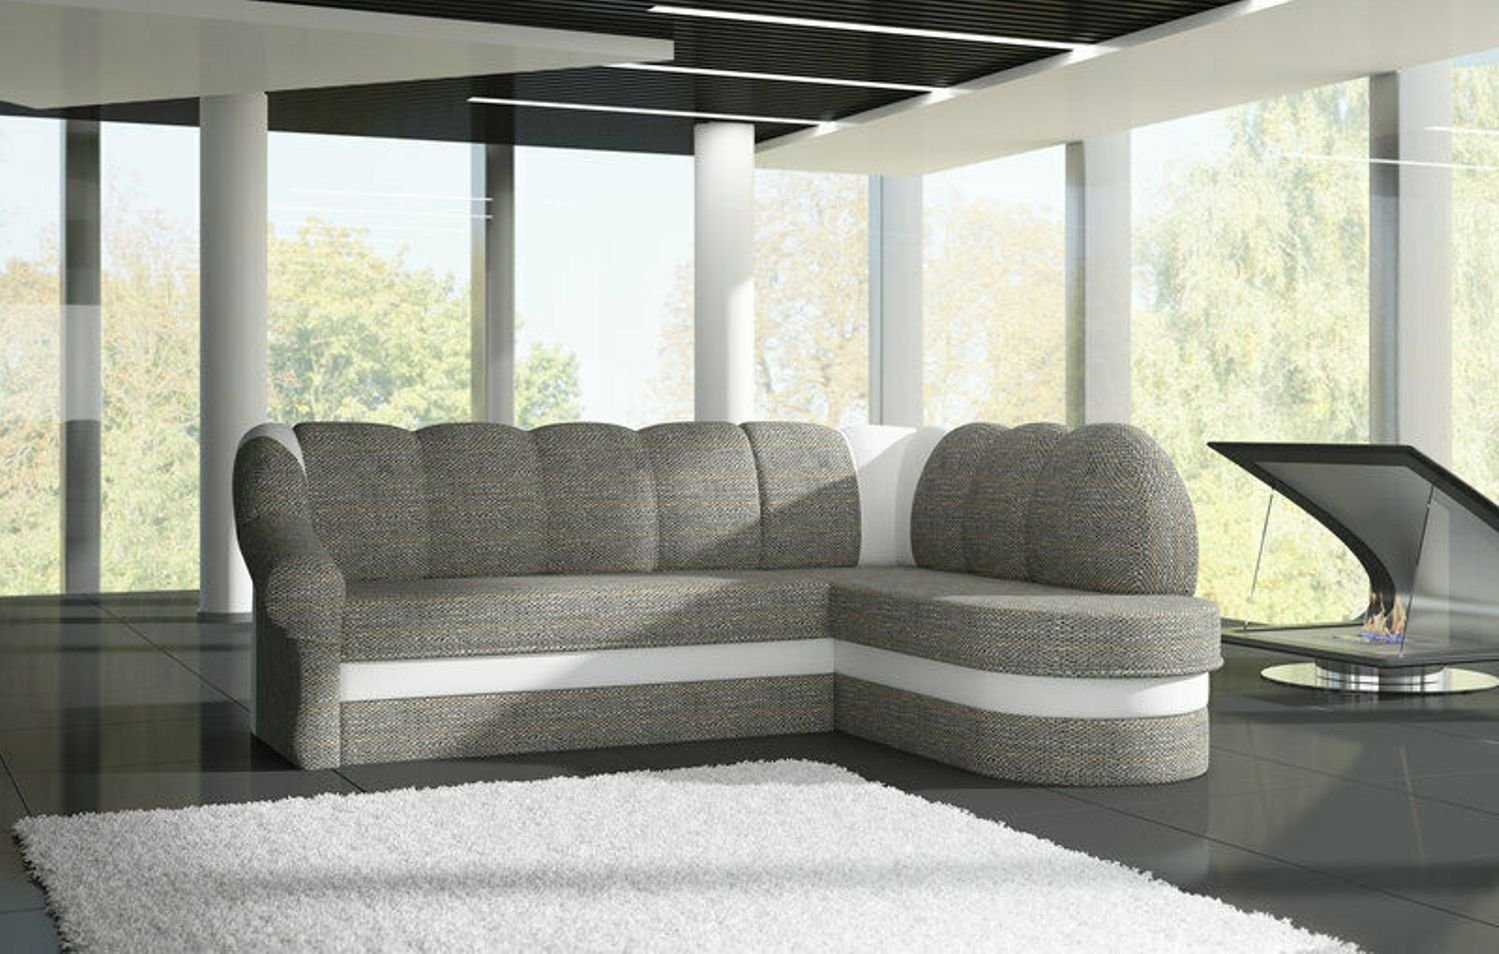 JVmoebel Ecksofa Designer Rotes Ecksofa Luxus Couch Modernes Textil Polster Sofa, Made in Europe Hellgrau/Weiß